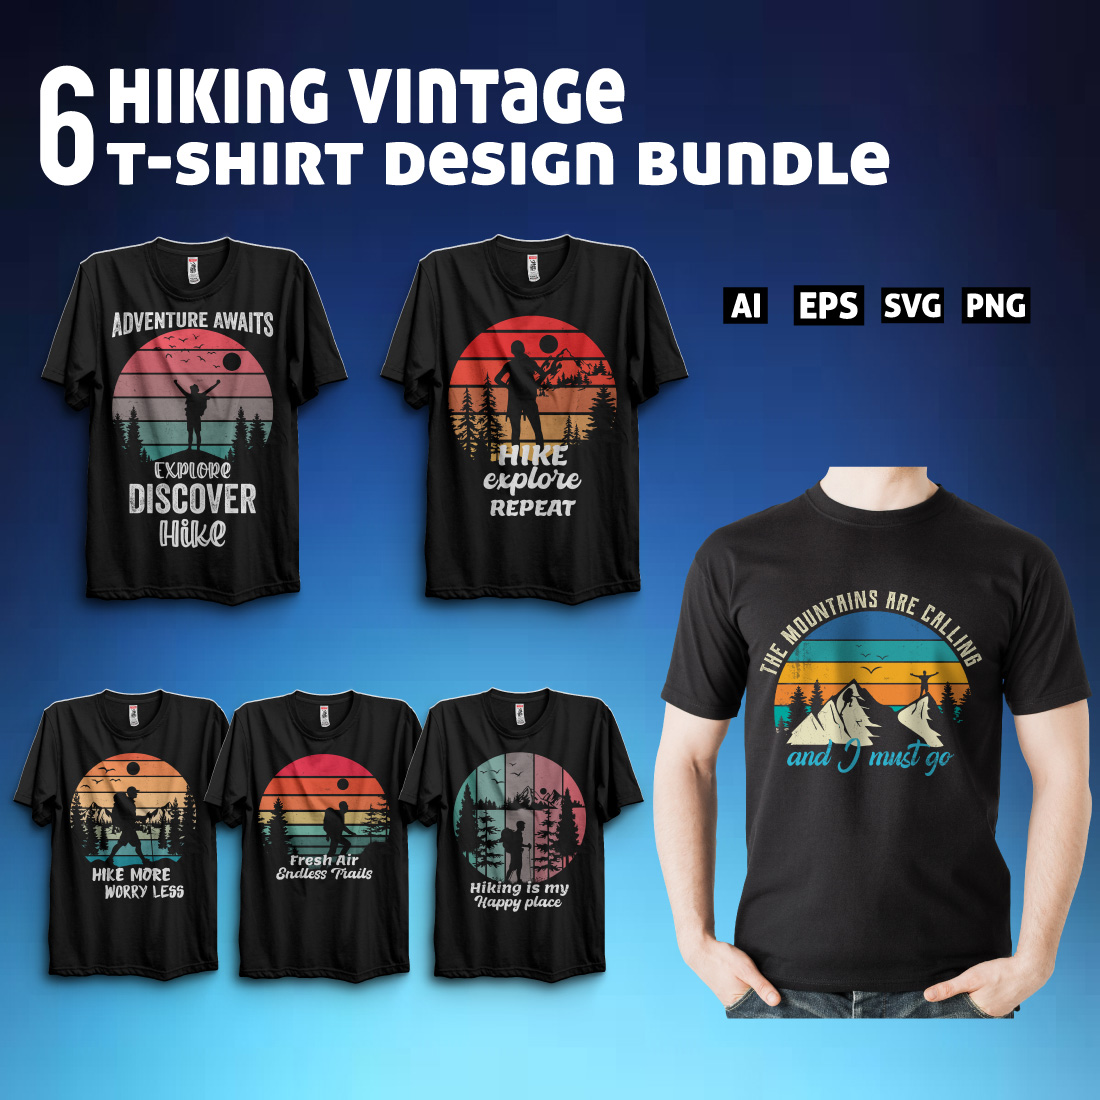 Hiking vintage t-shirt design bundle cover image.